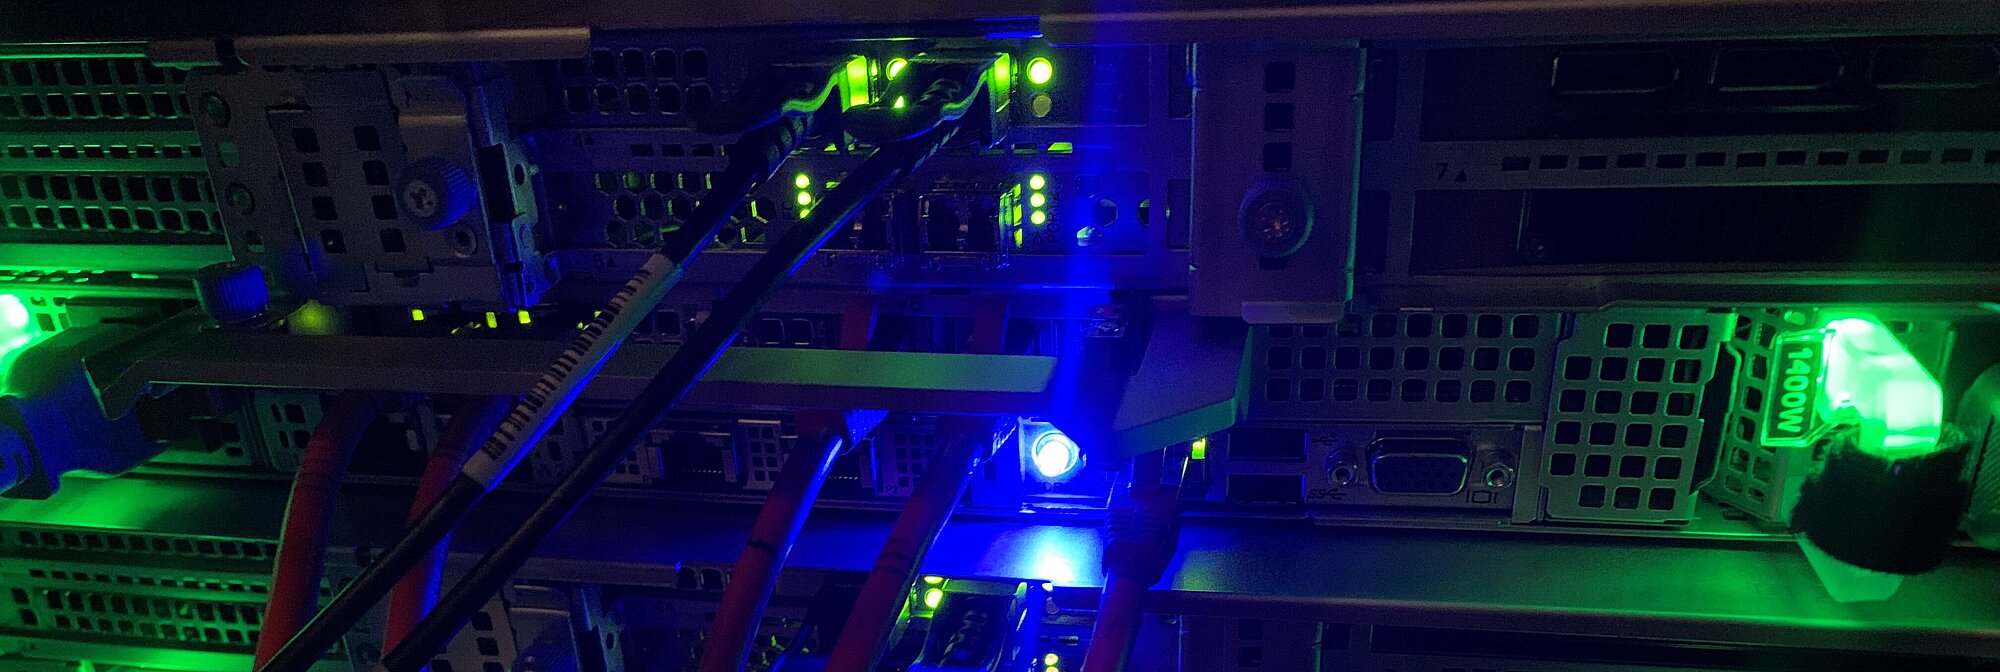 Foto: Lichter in grün und Blau von einem Server